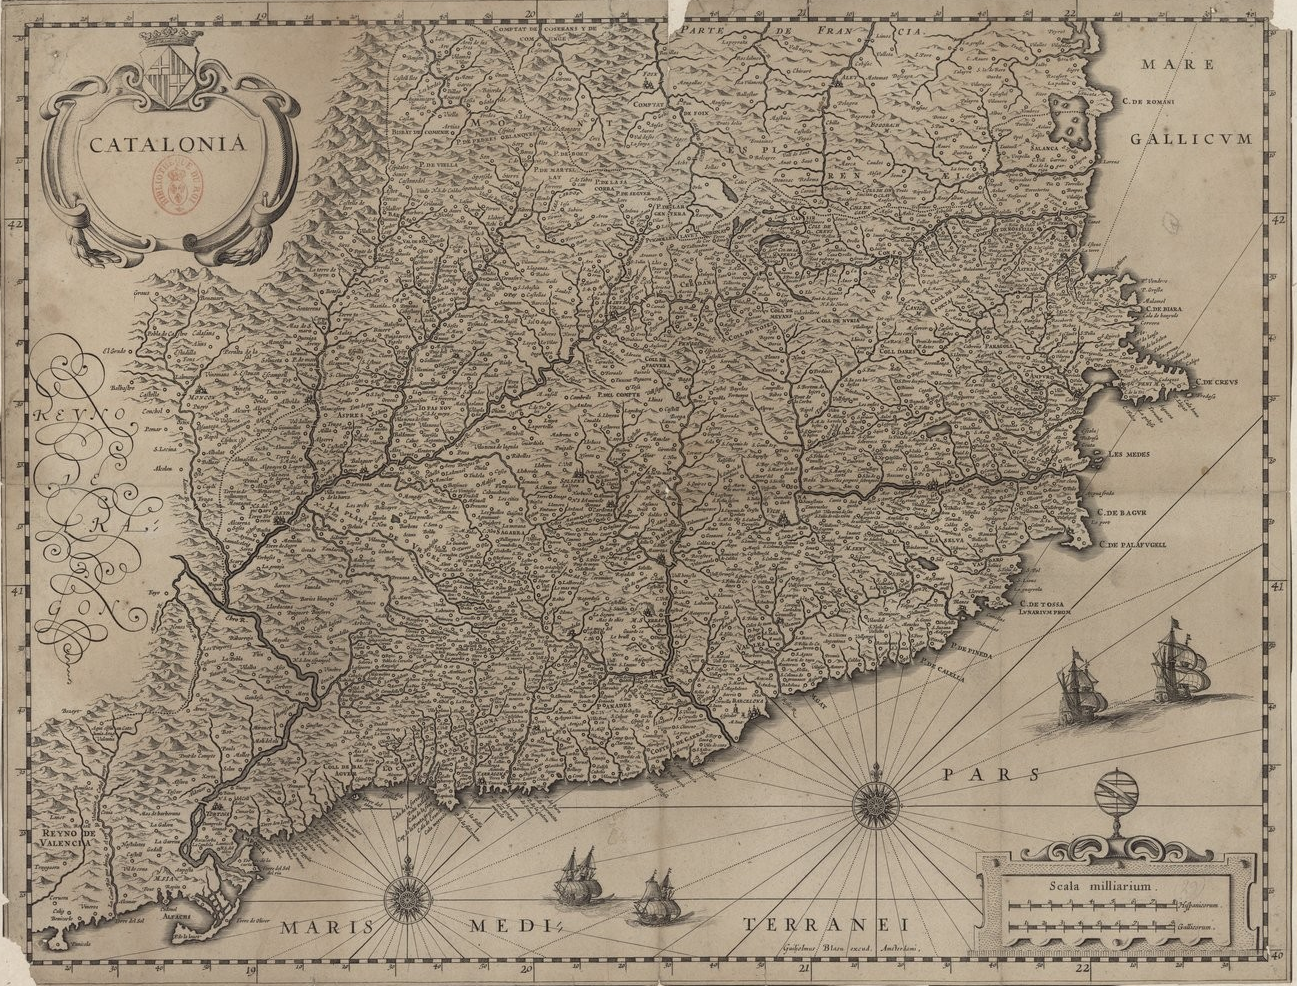 Mapa nederlandés de Catalunya (1630). Fuente Bibliothèque Nationale de France